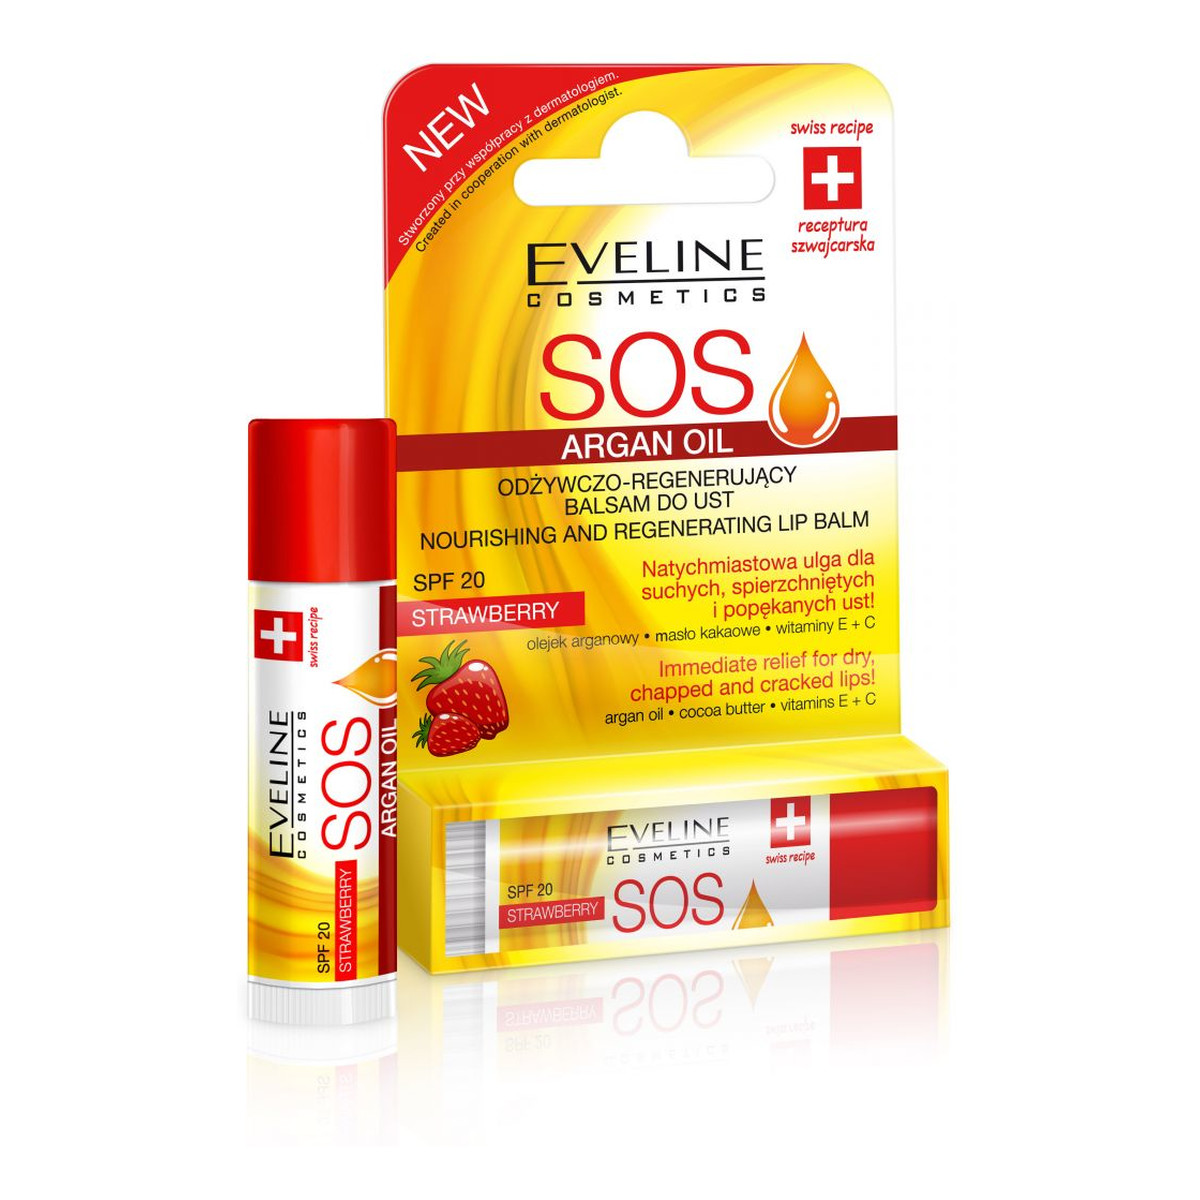 Eveline SOS Argan Oil Odżywczo – Regenerujący Balsam Do Ust Strawberry